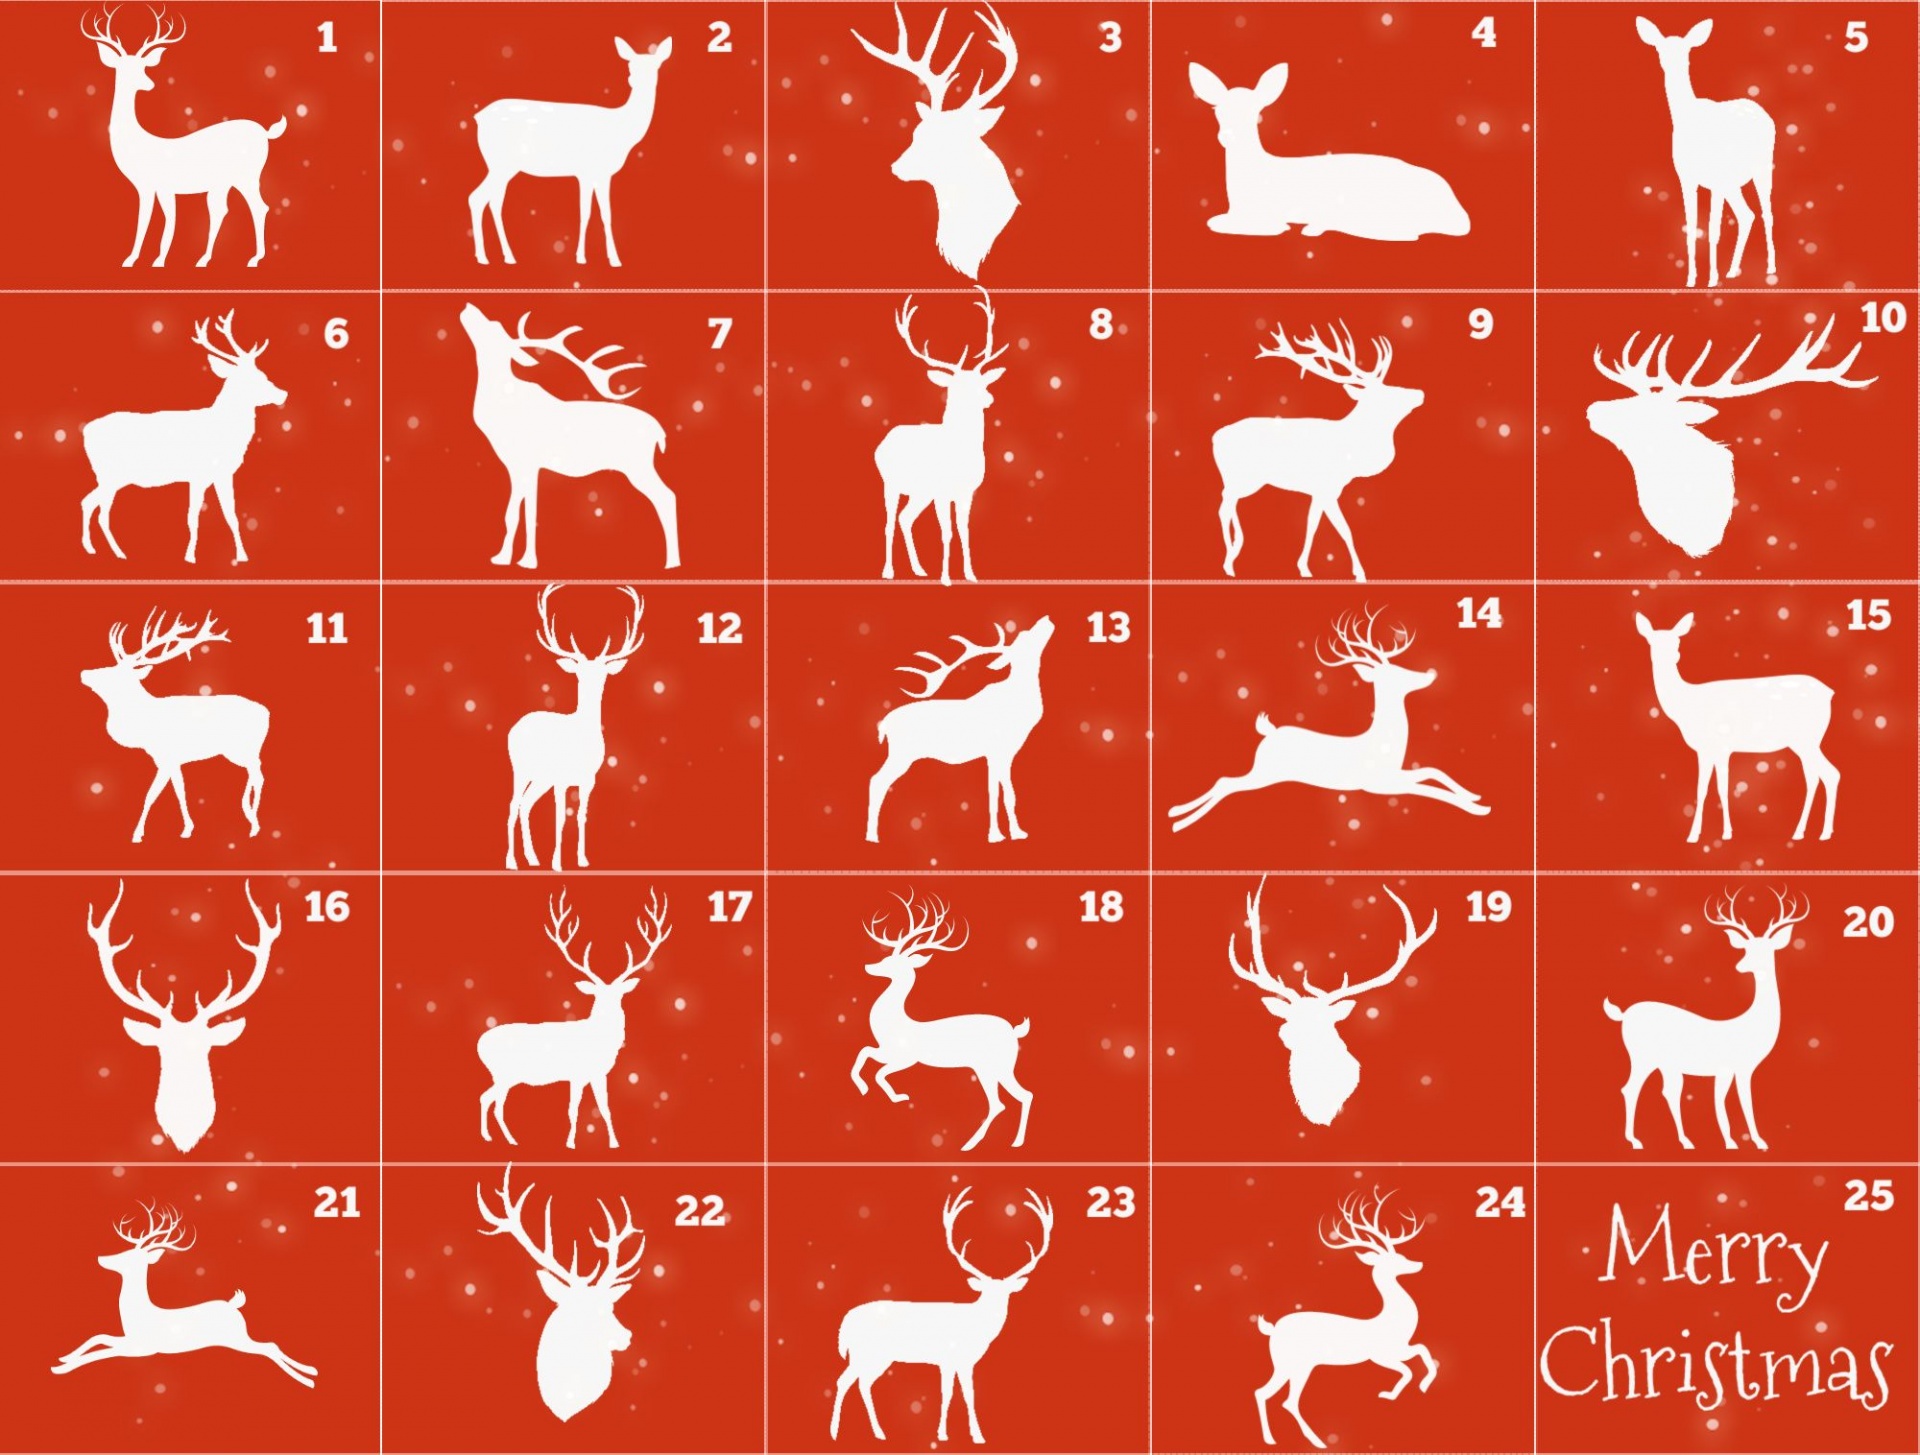 Reindeer Christmas Calendar